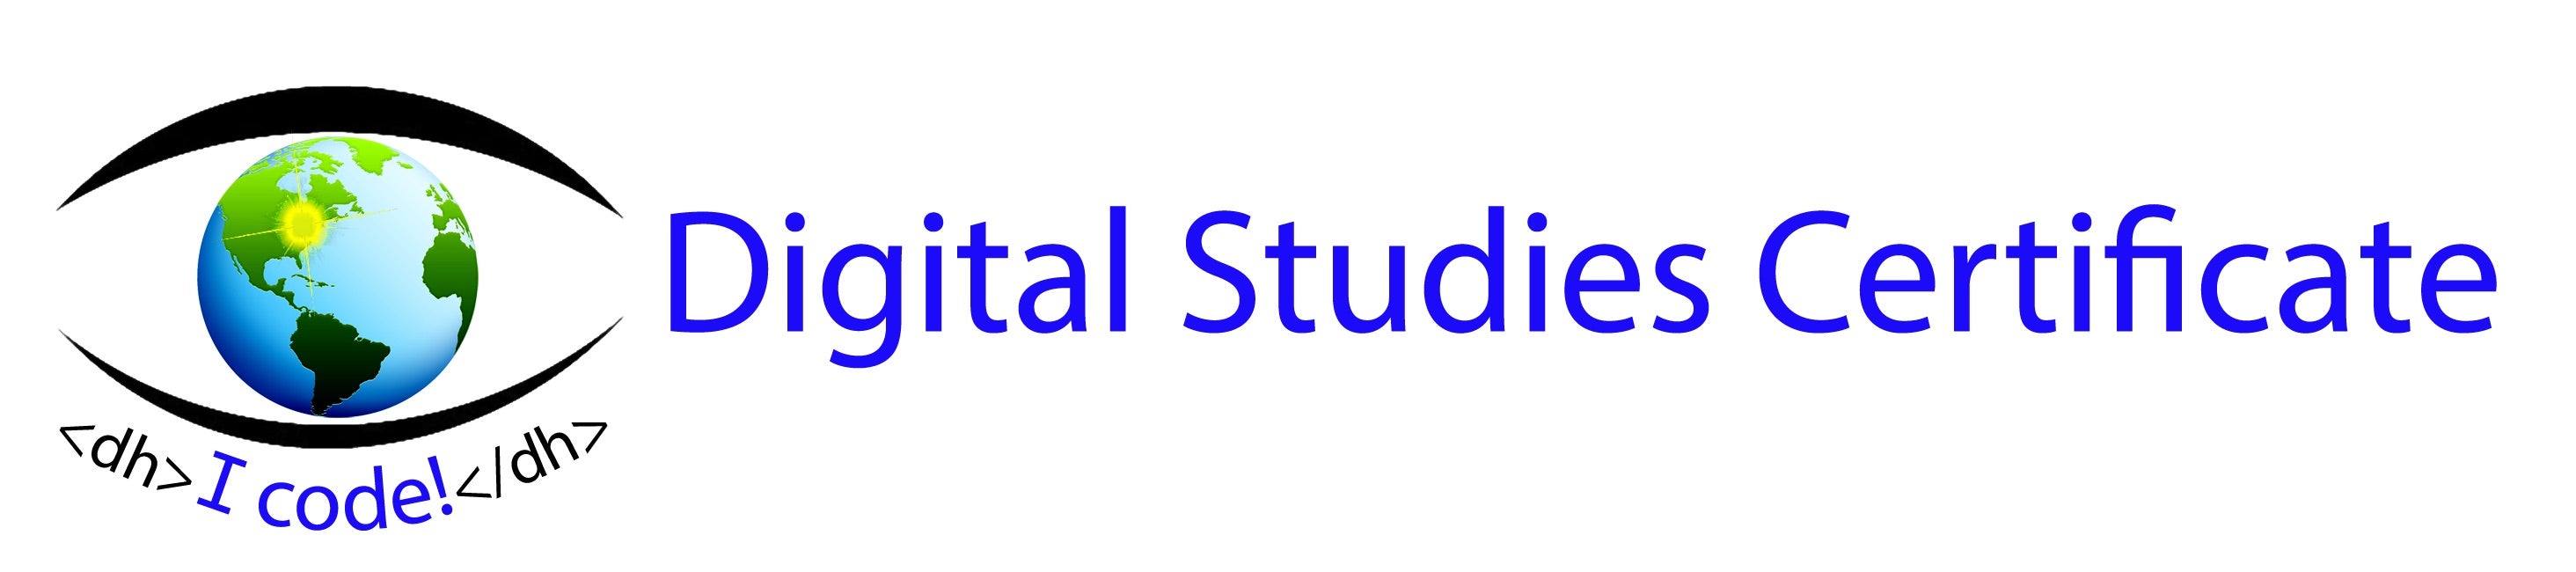 Digital Studies Certificate logo